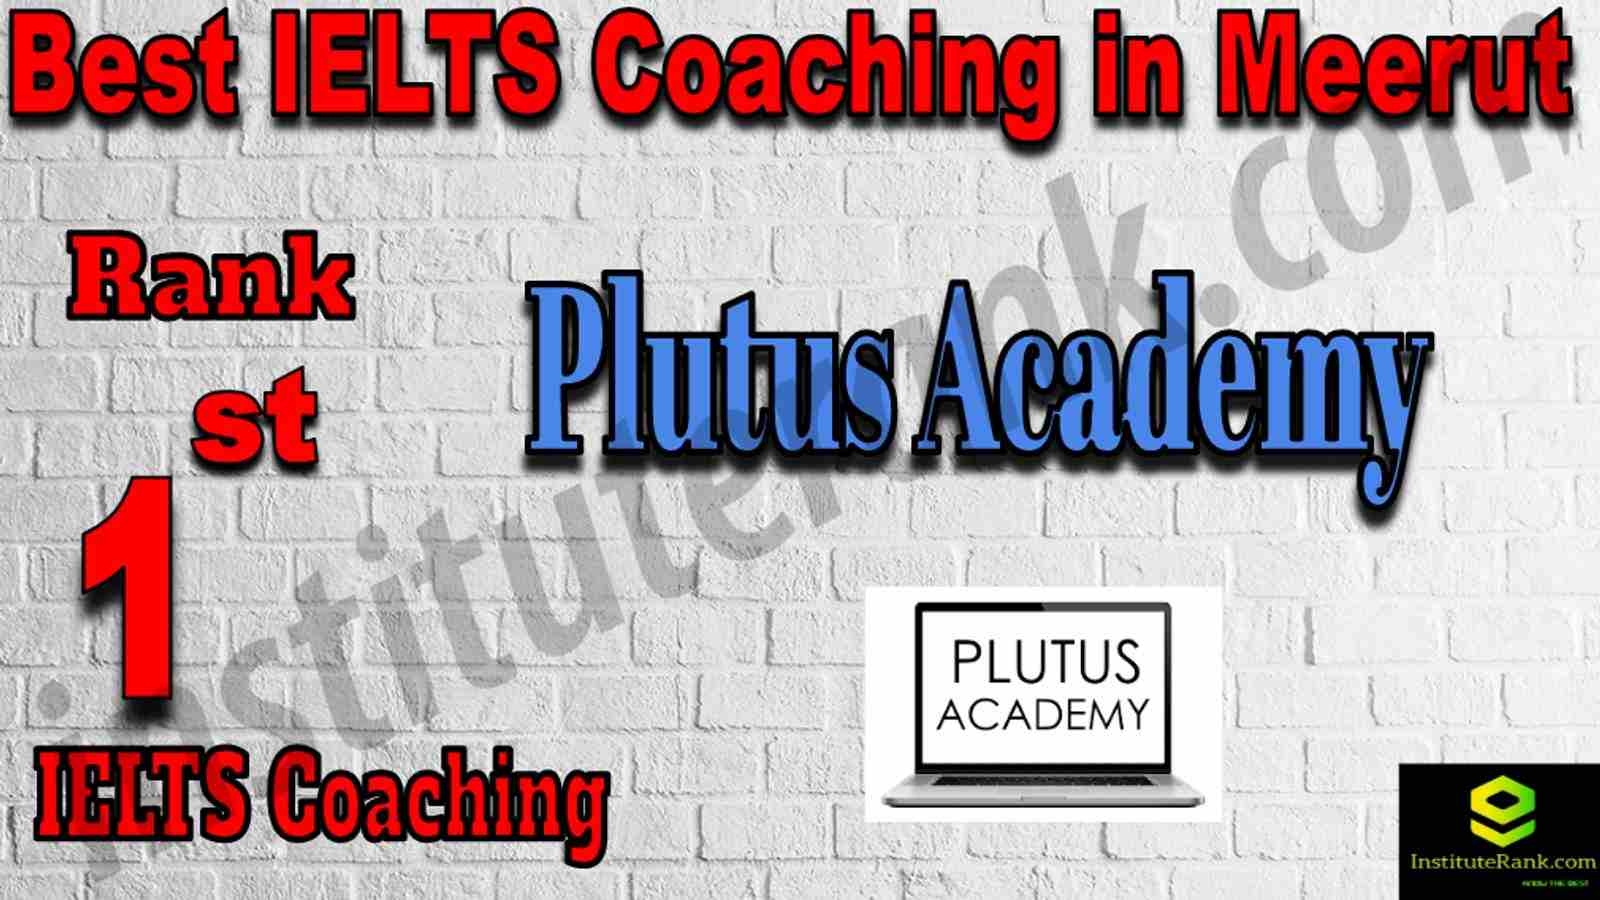 1st Best IELTS Coaching in Meerut